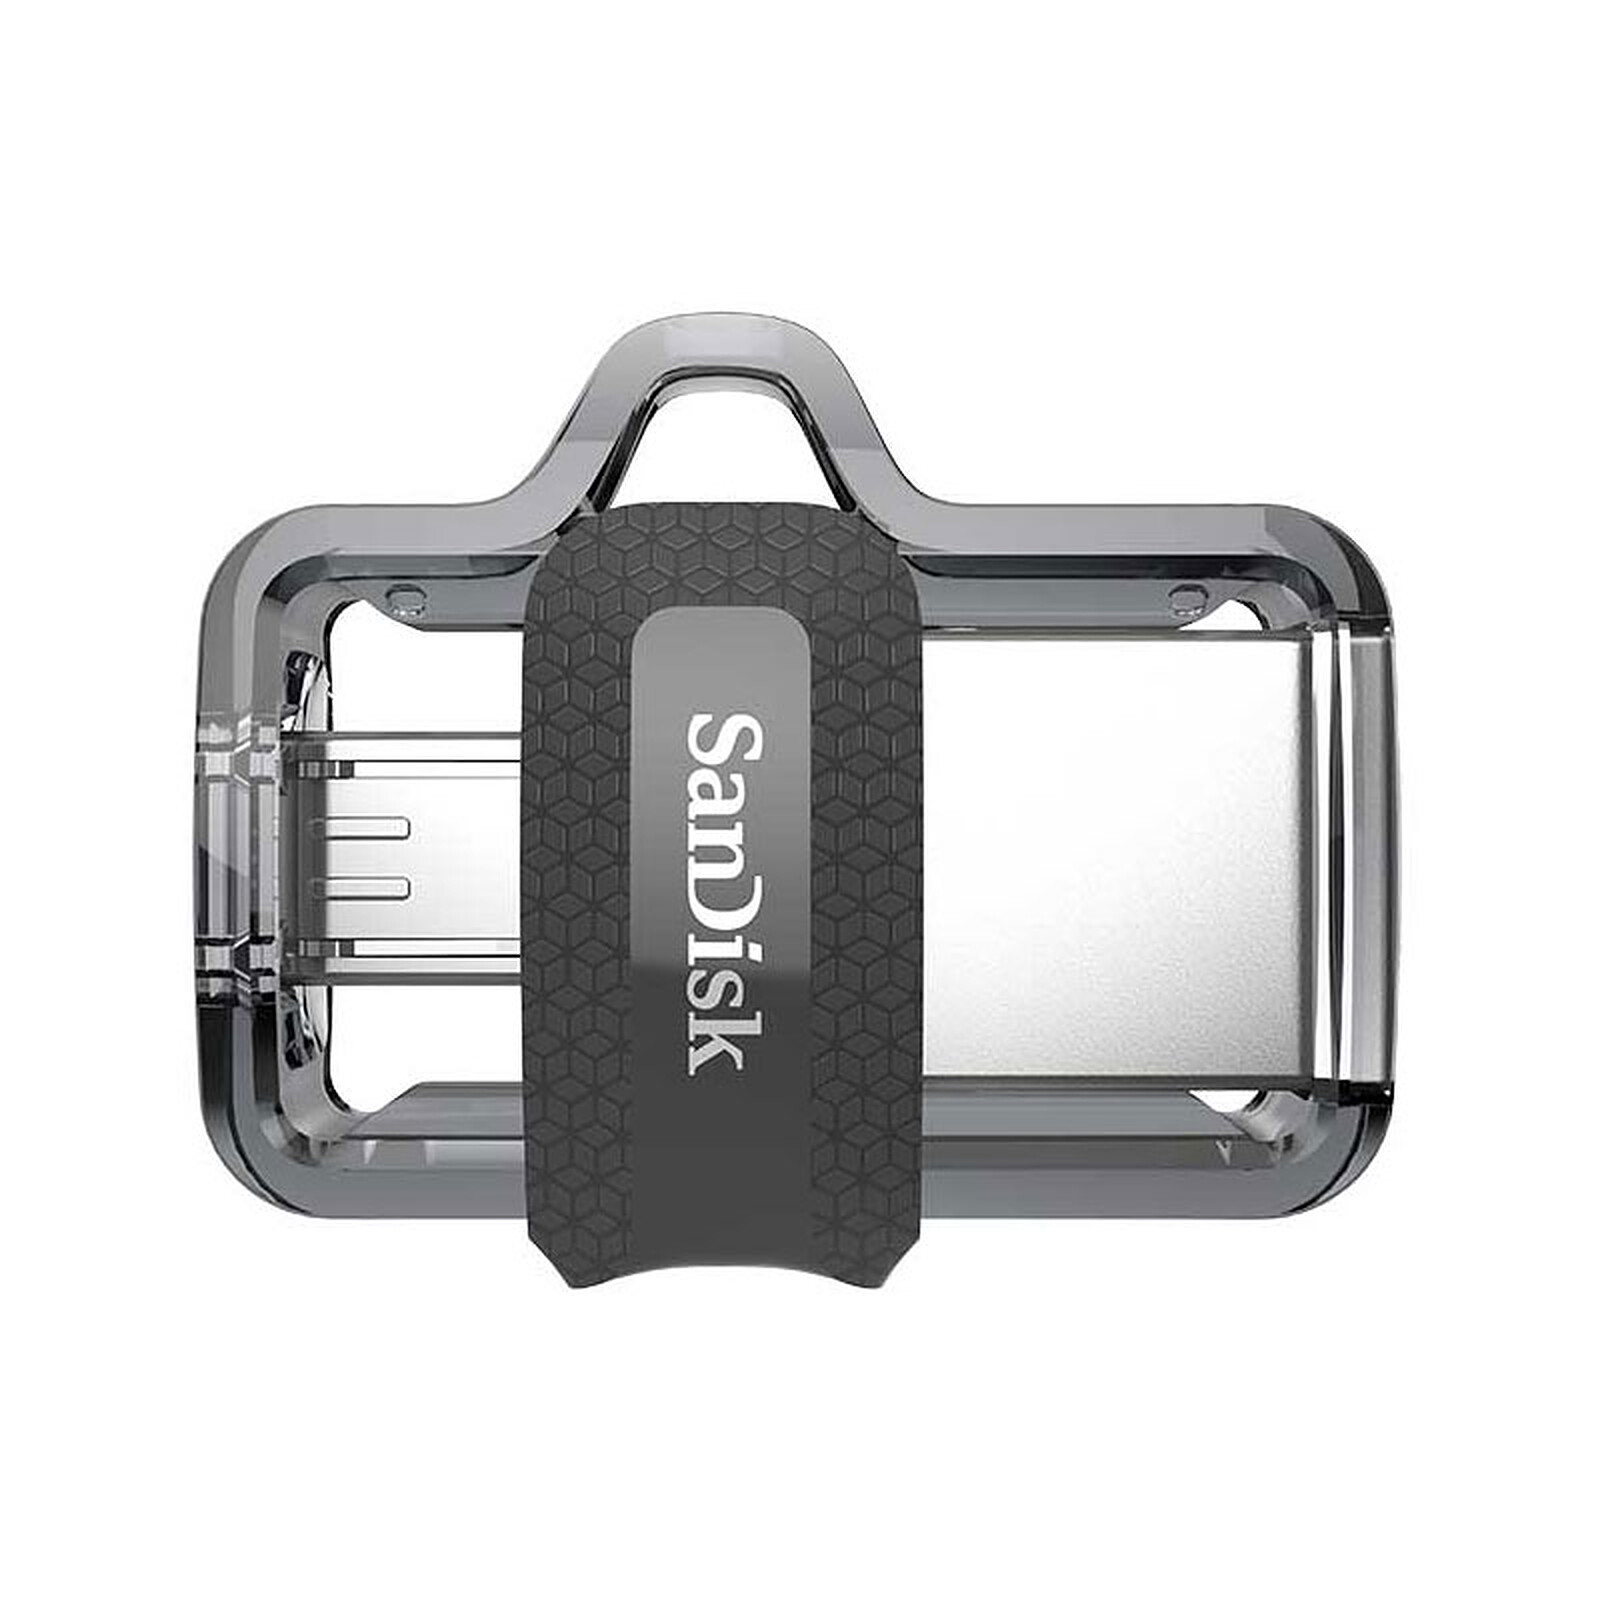 Clé USB Sandisk iXPAND 3.0 lecteur Flash OTG 128 go lecteur de